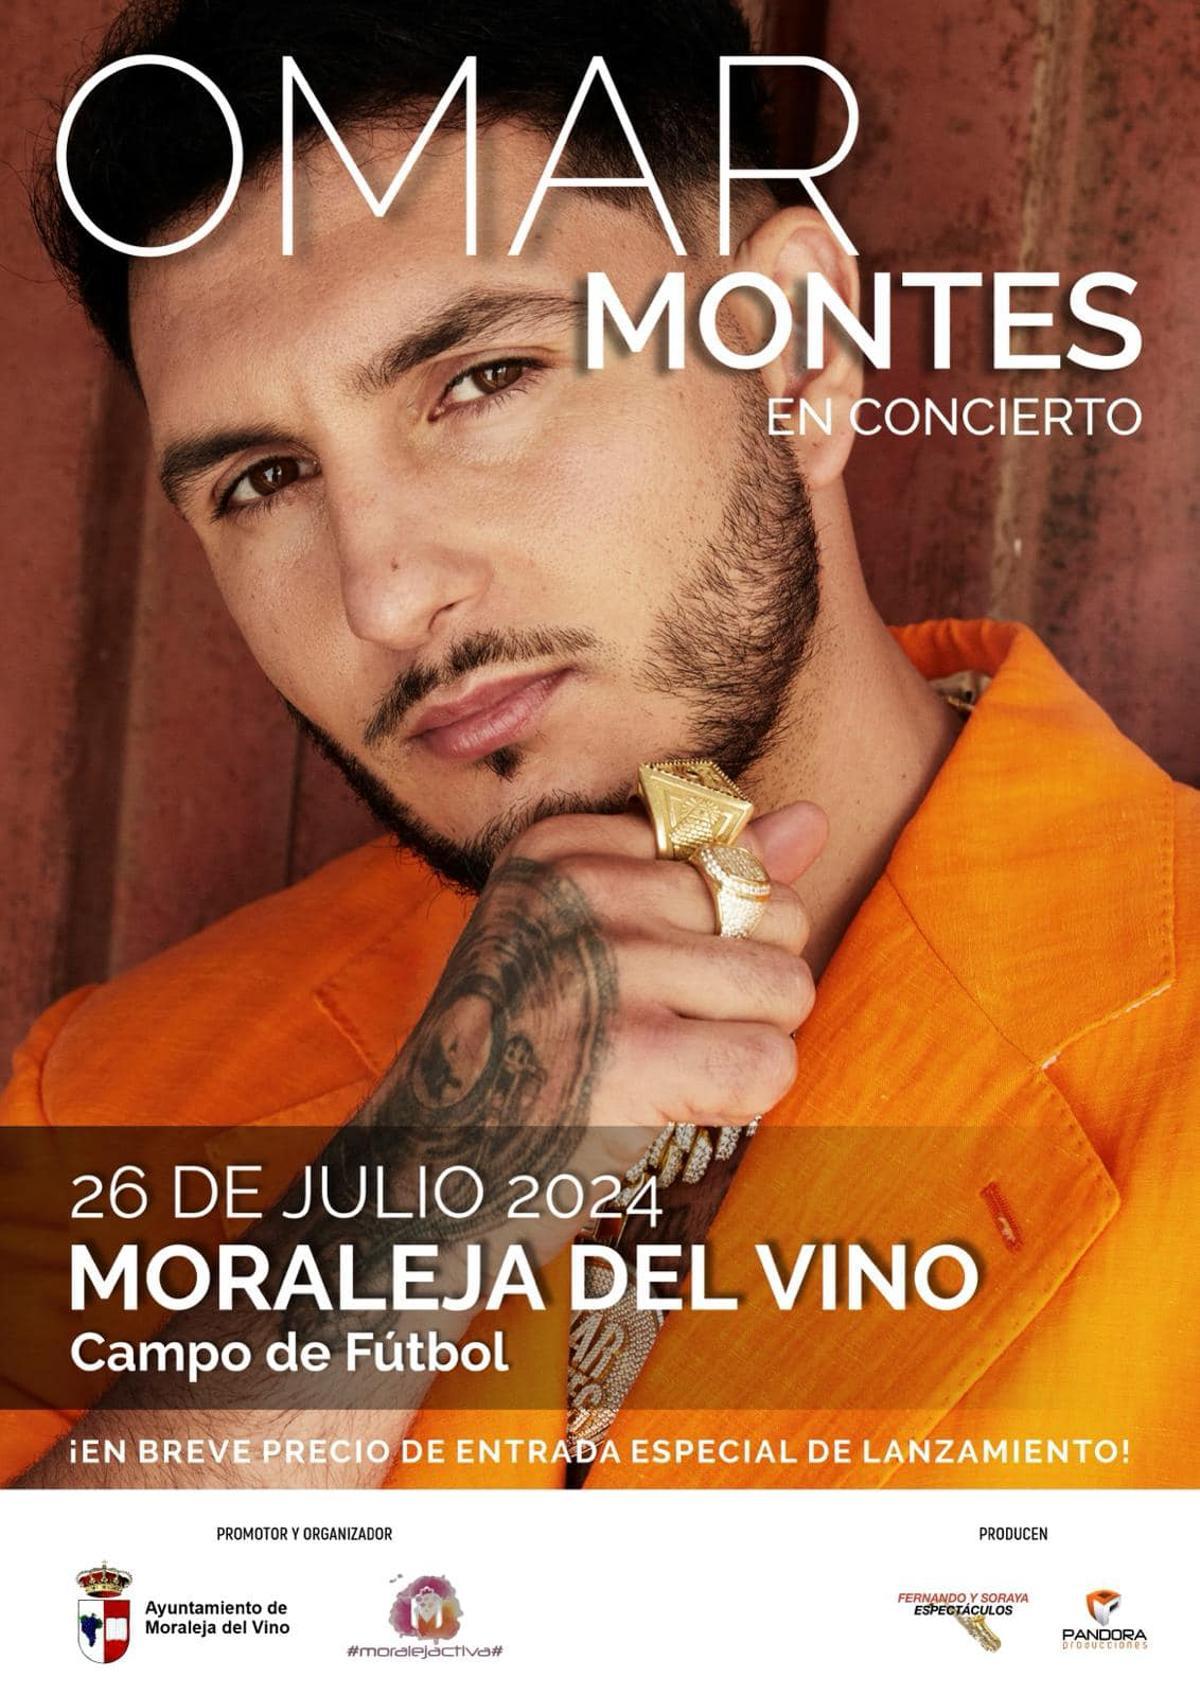 Omar Montes dará un concierto en Moraleja del Vino.